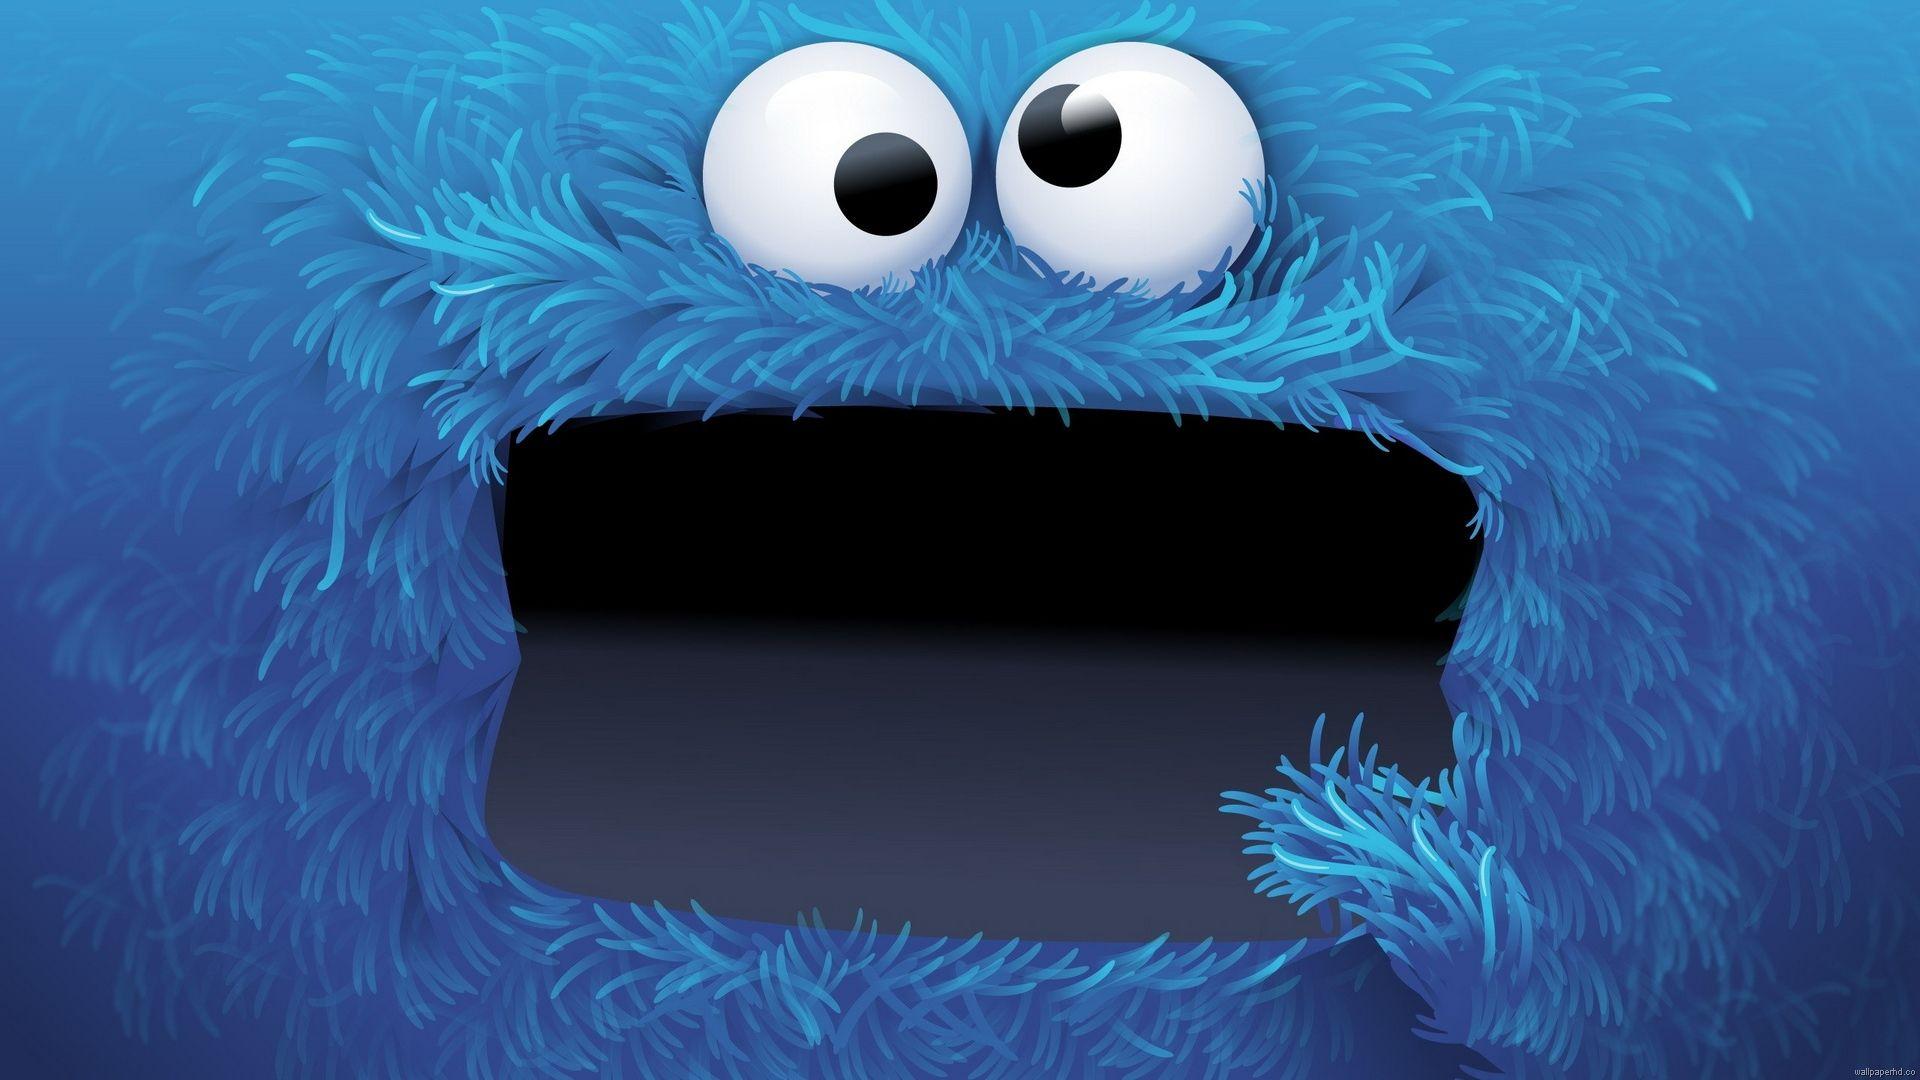 1920x1080 Tải xuống Cookie Monster Hình nền 1920 x 1080 - 4559581 - Sesame